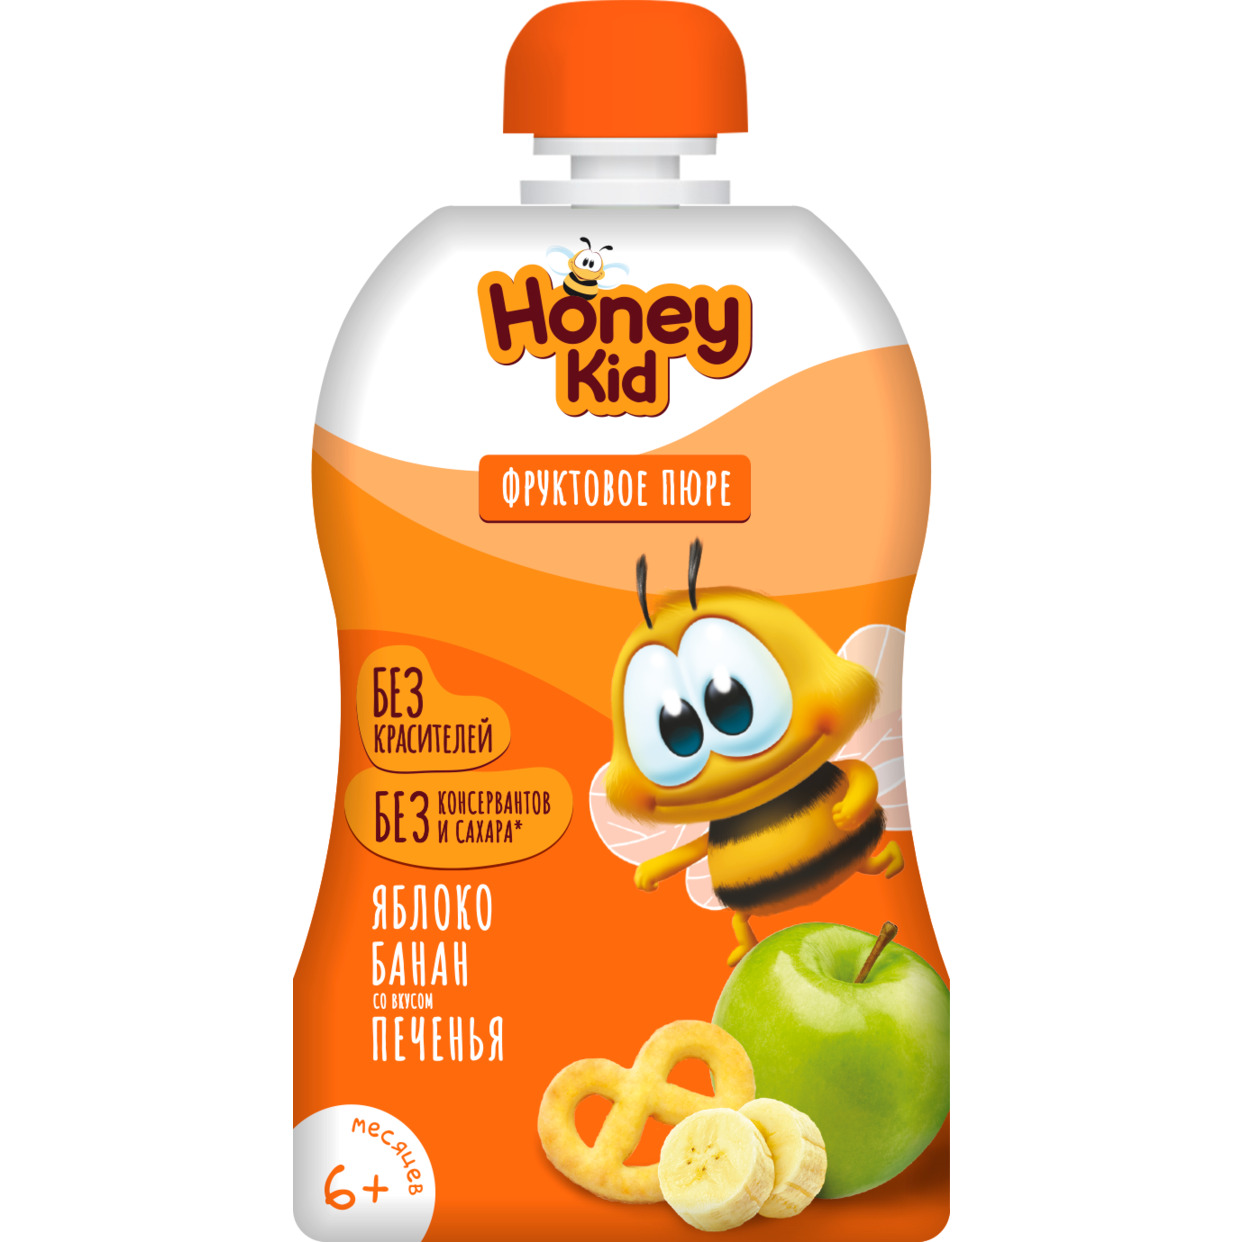 Пюре "Honey Kid" из яблок и банана со вкусом печенья для детского питания для детей раннего возраста гомогенизированное, стерилизова нное, 90 г с 6 месяцев по акции в Пятерочке